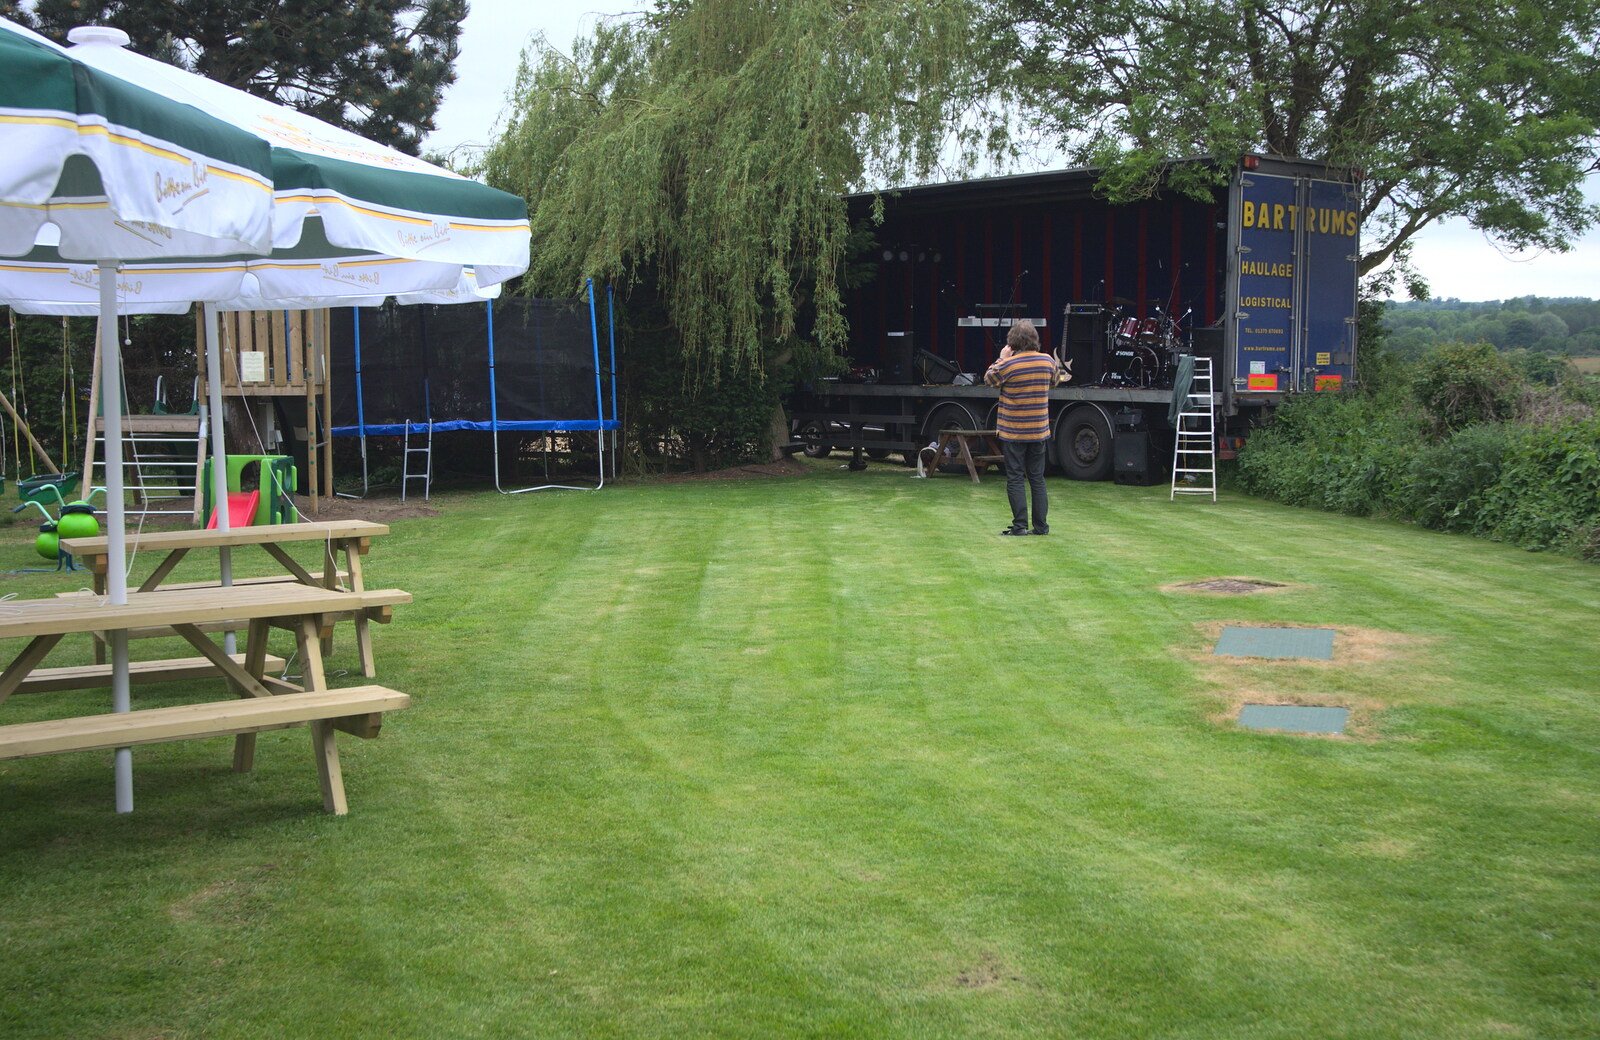 The BBs at the White Hart, Roydon, Norfolk - 1st June 2012: Max surveys the scene